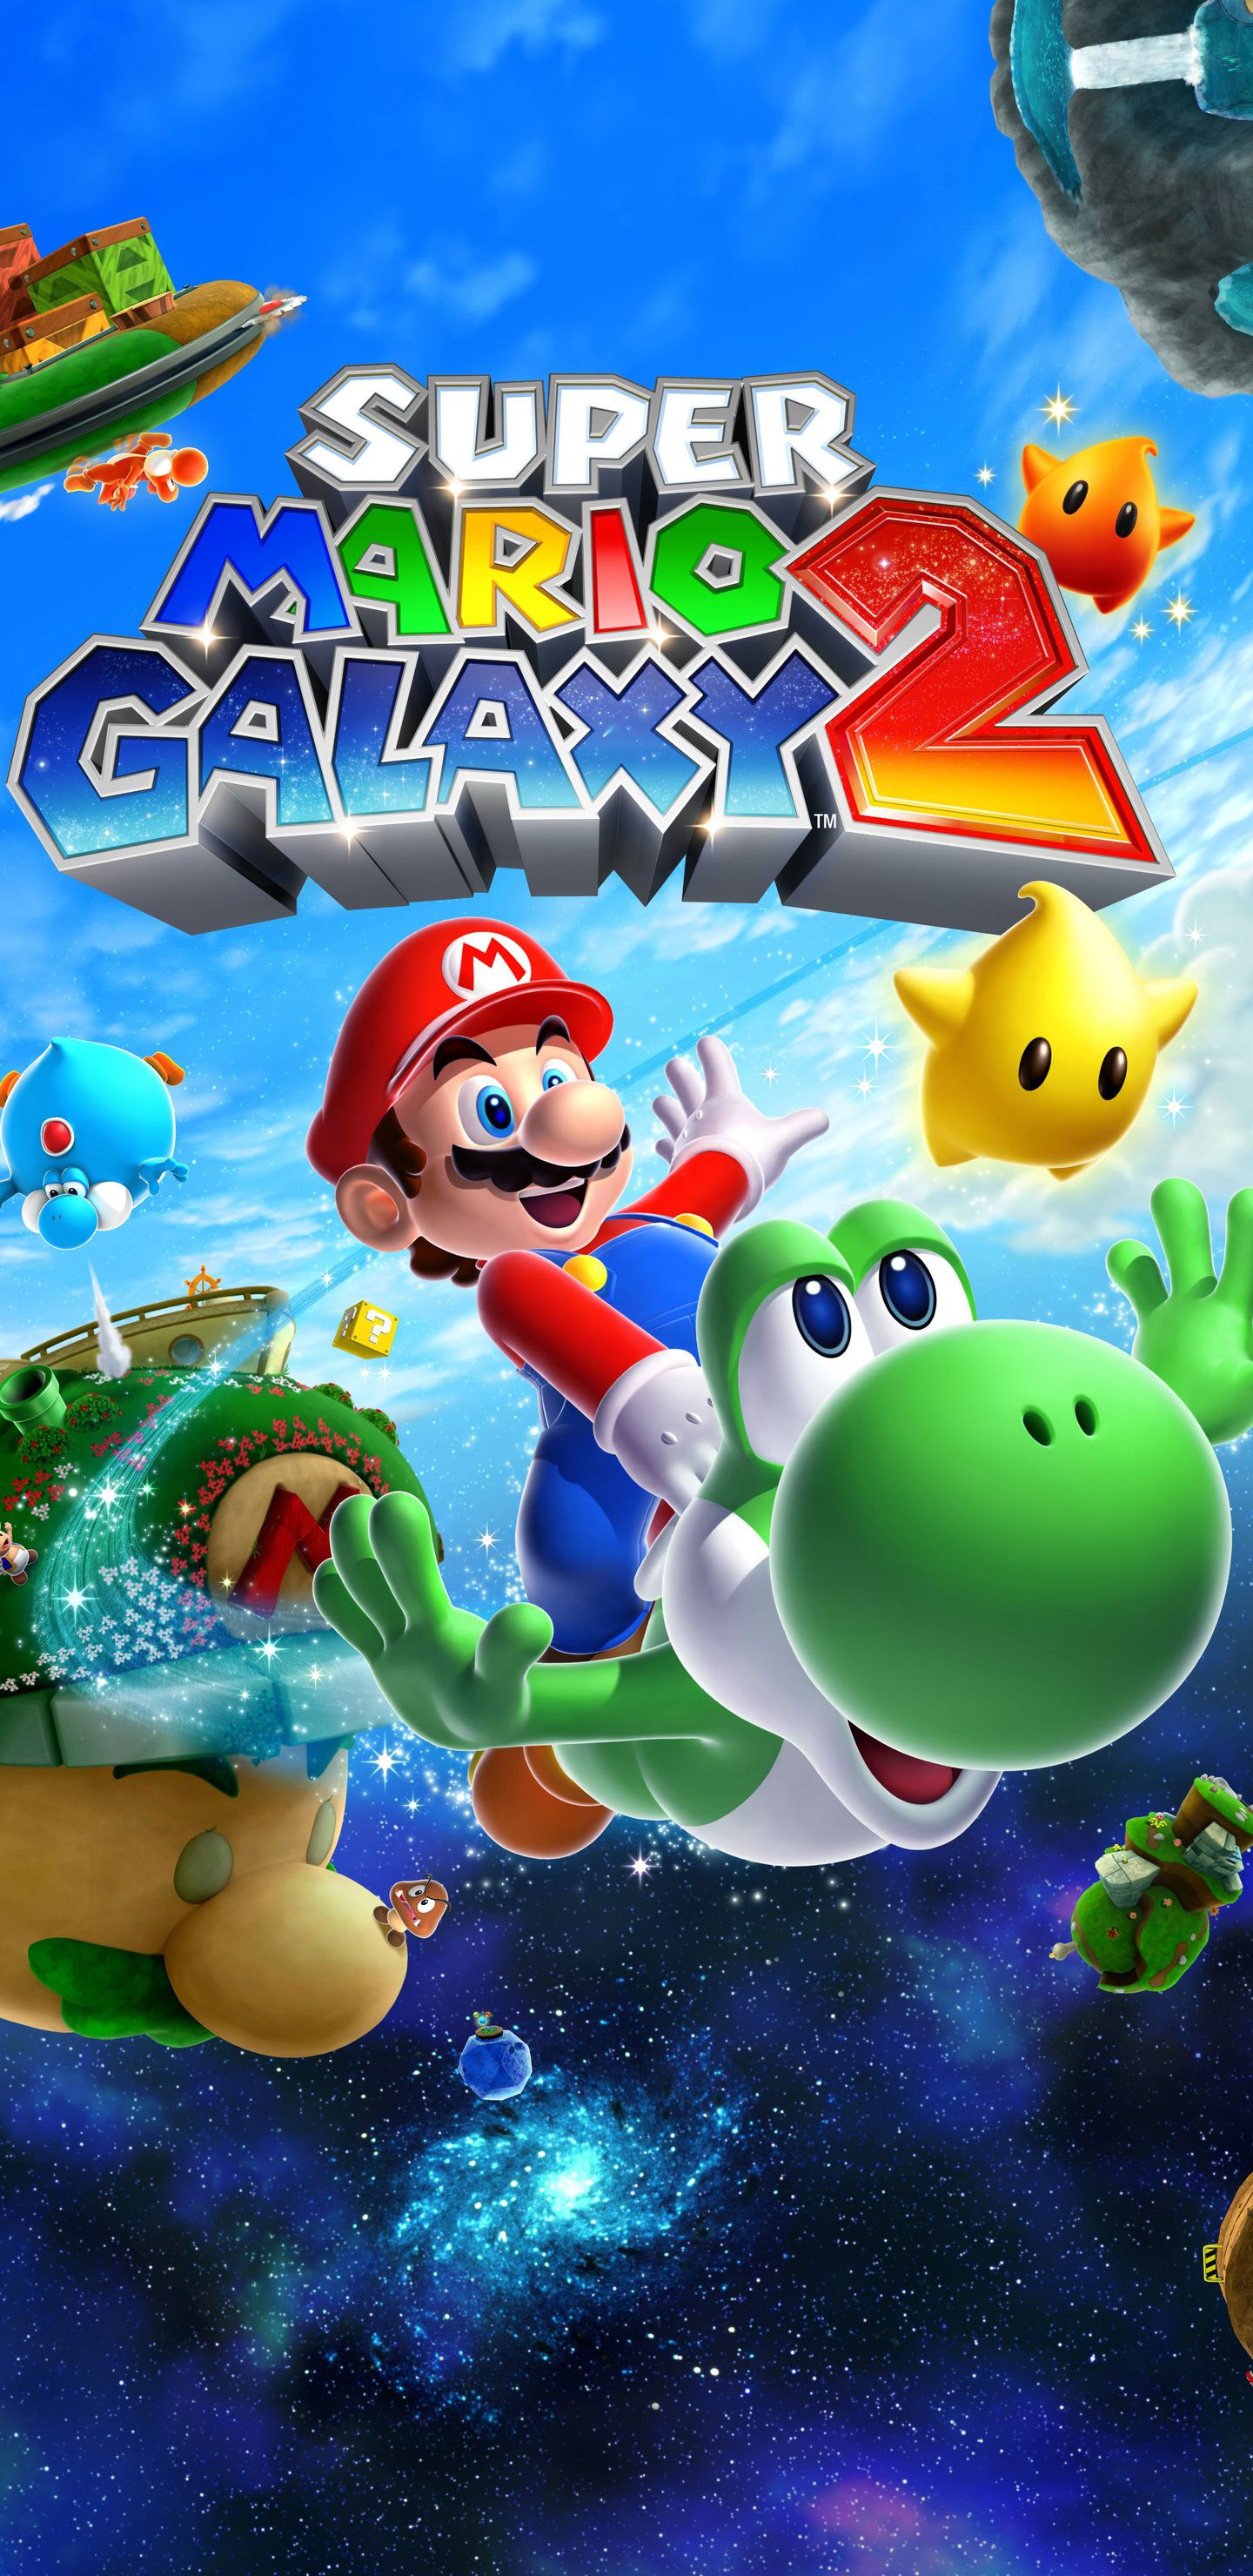 Super Mario Galaxy 2 Samsung Galaxy Note S S S